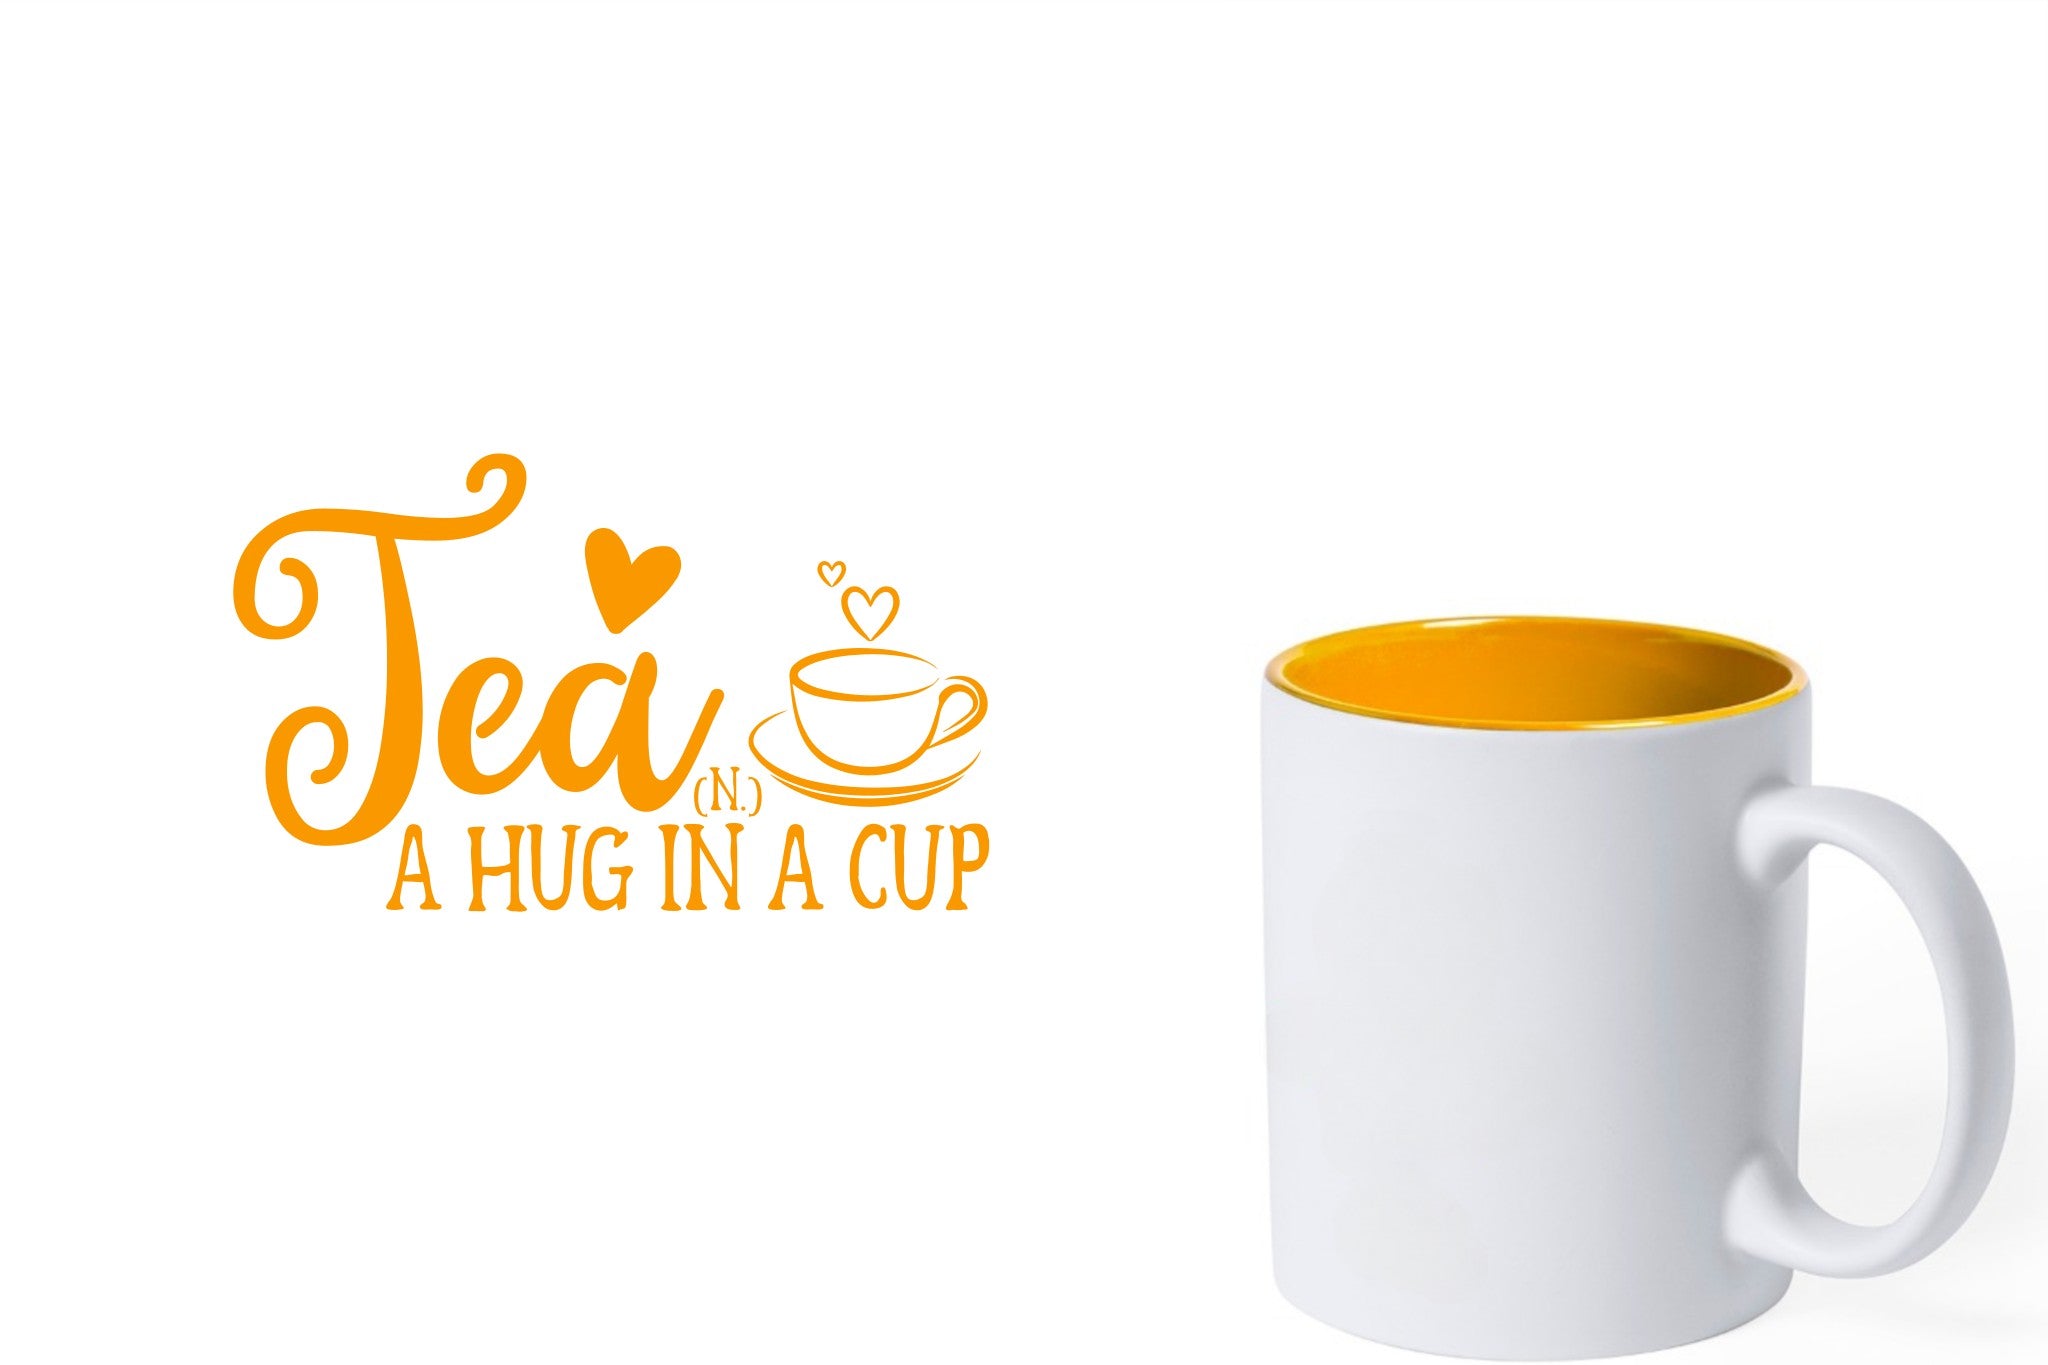 witte keramische mok met gele gravure  'Tea and a hug in a cup'.